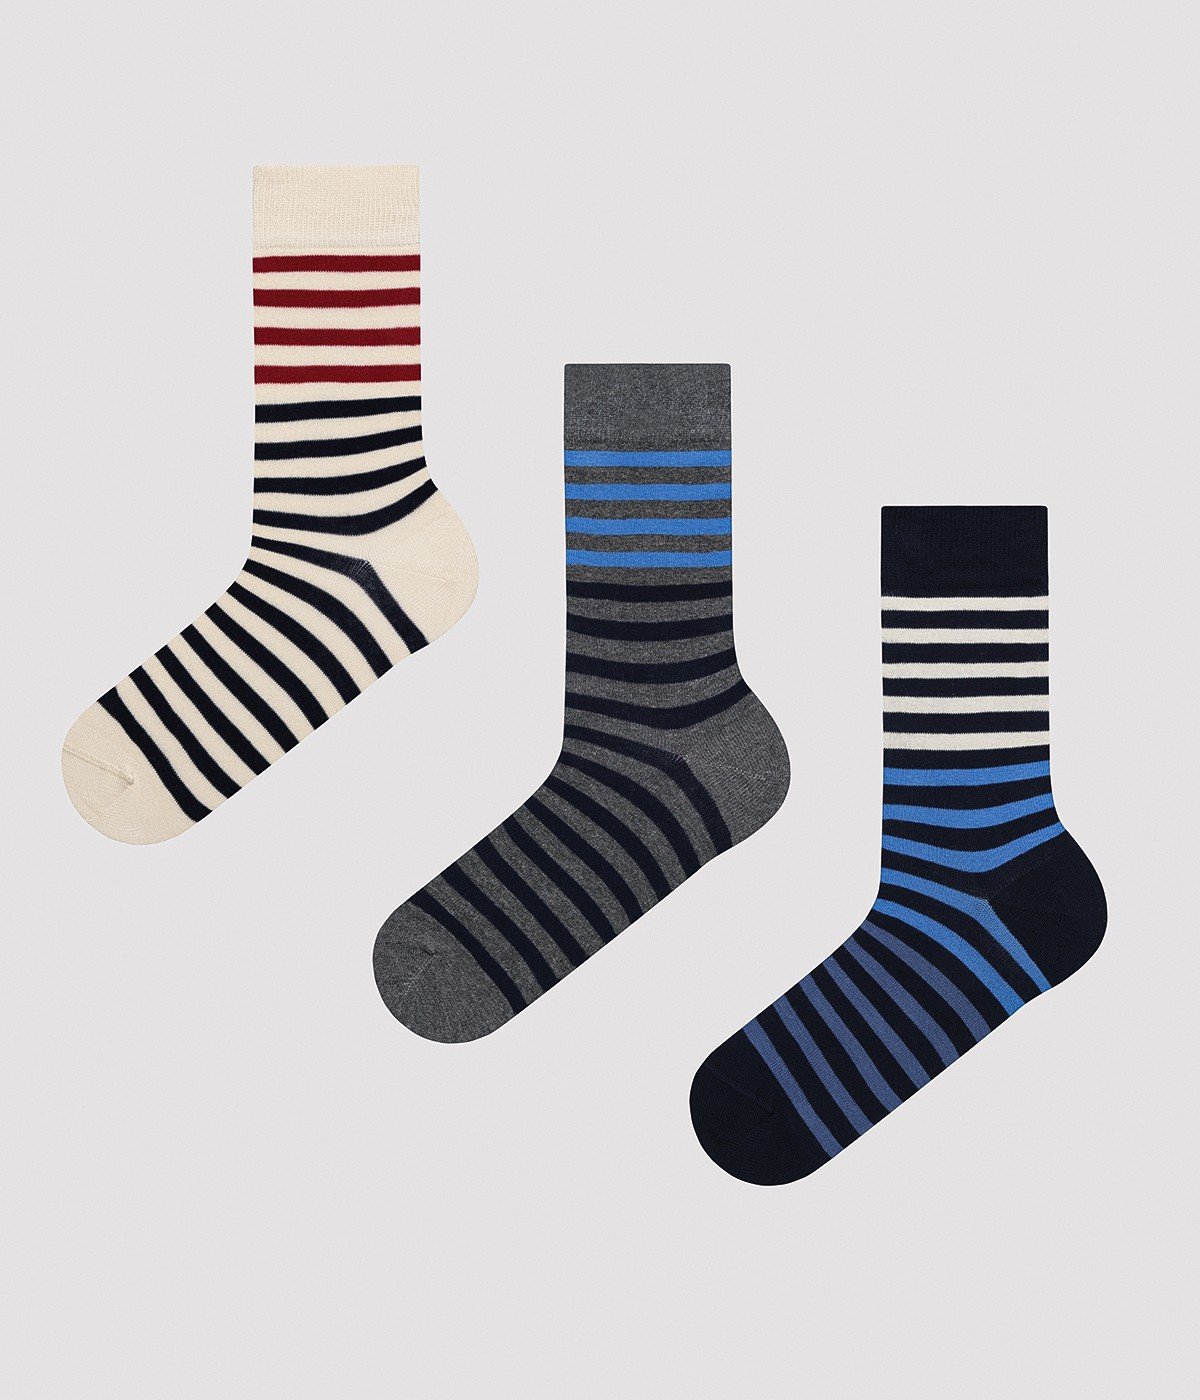 Men Color Striped 3in1 Socket Socks